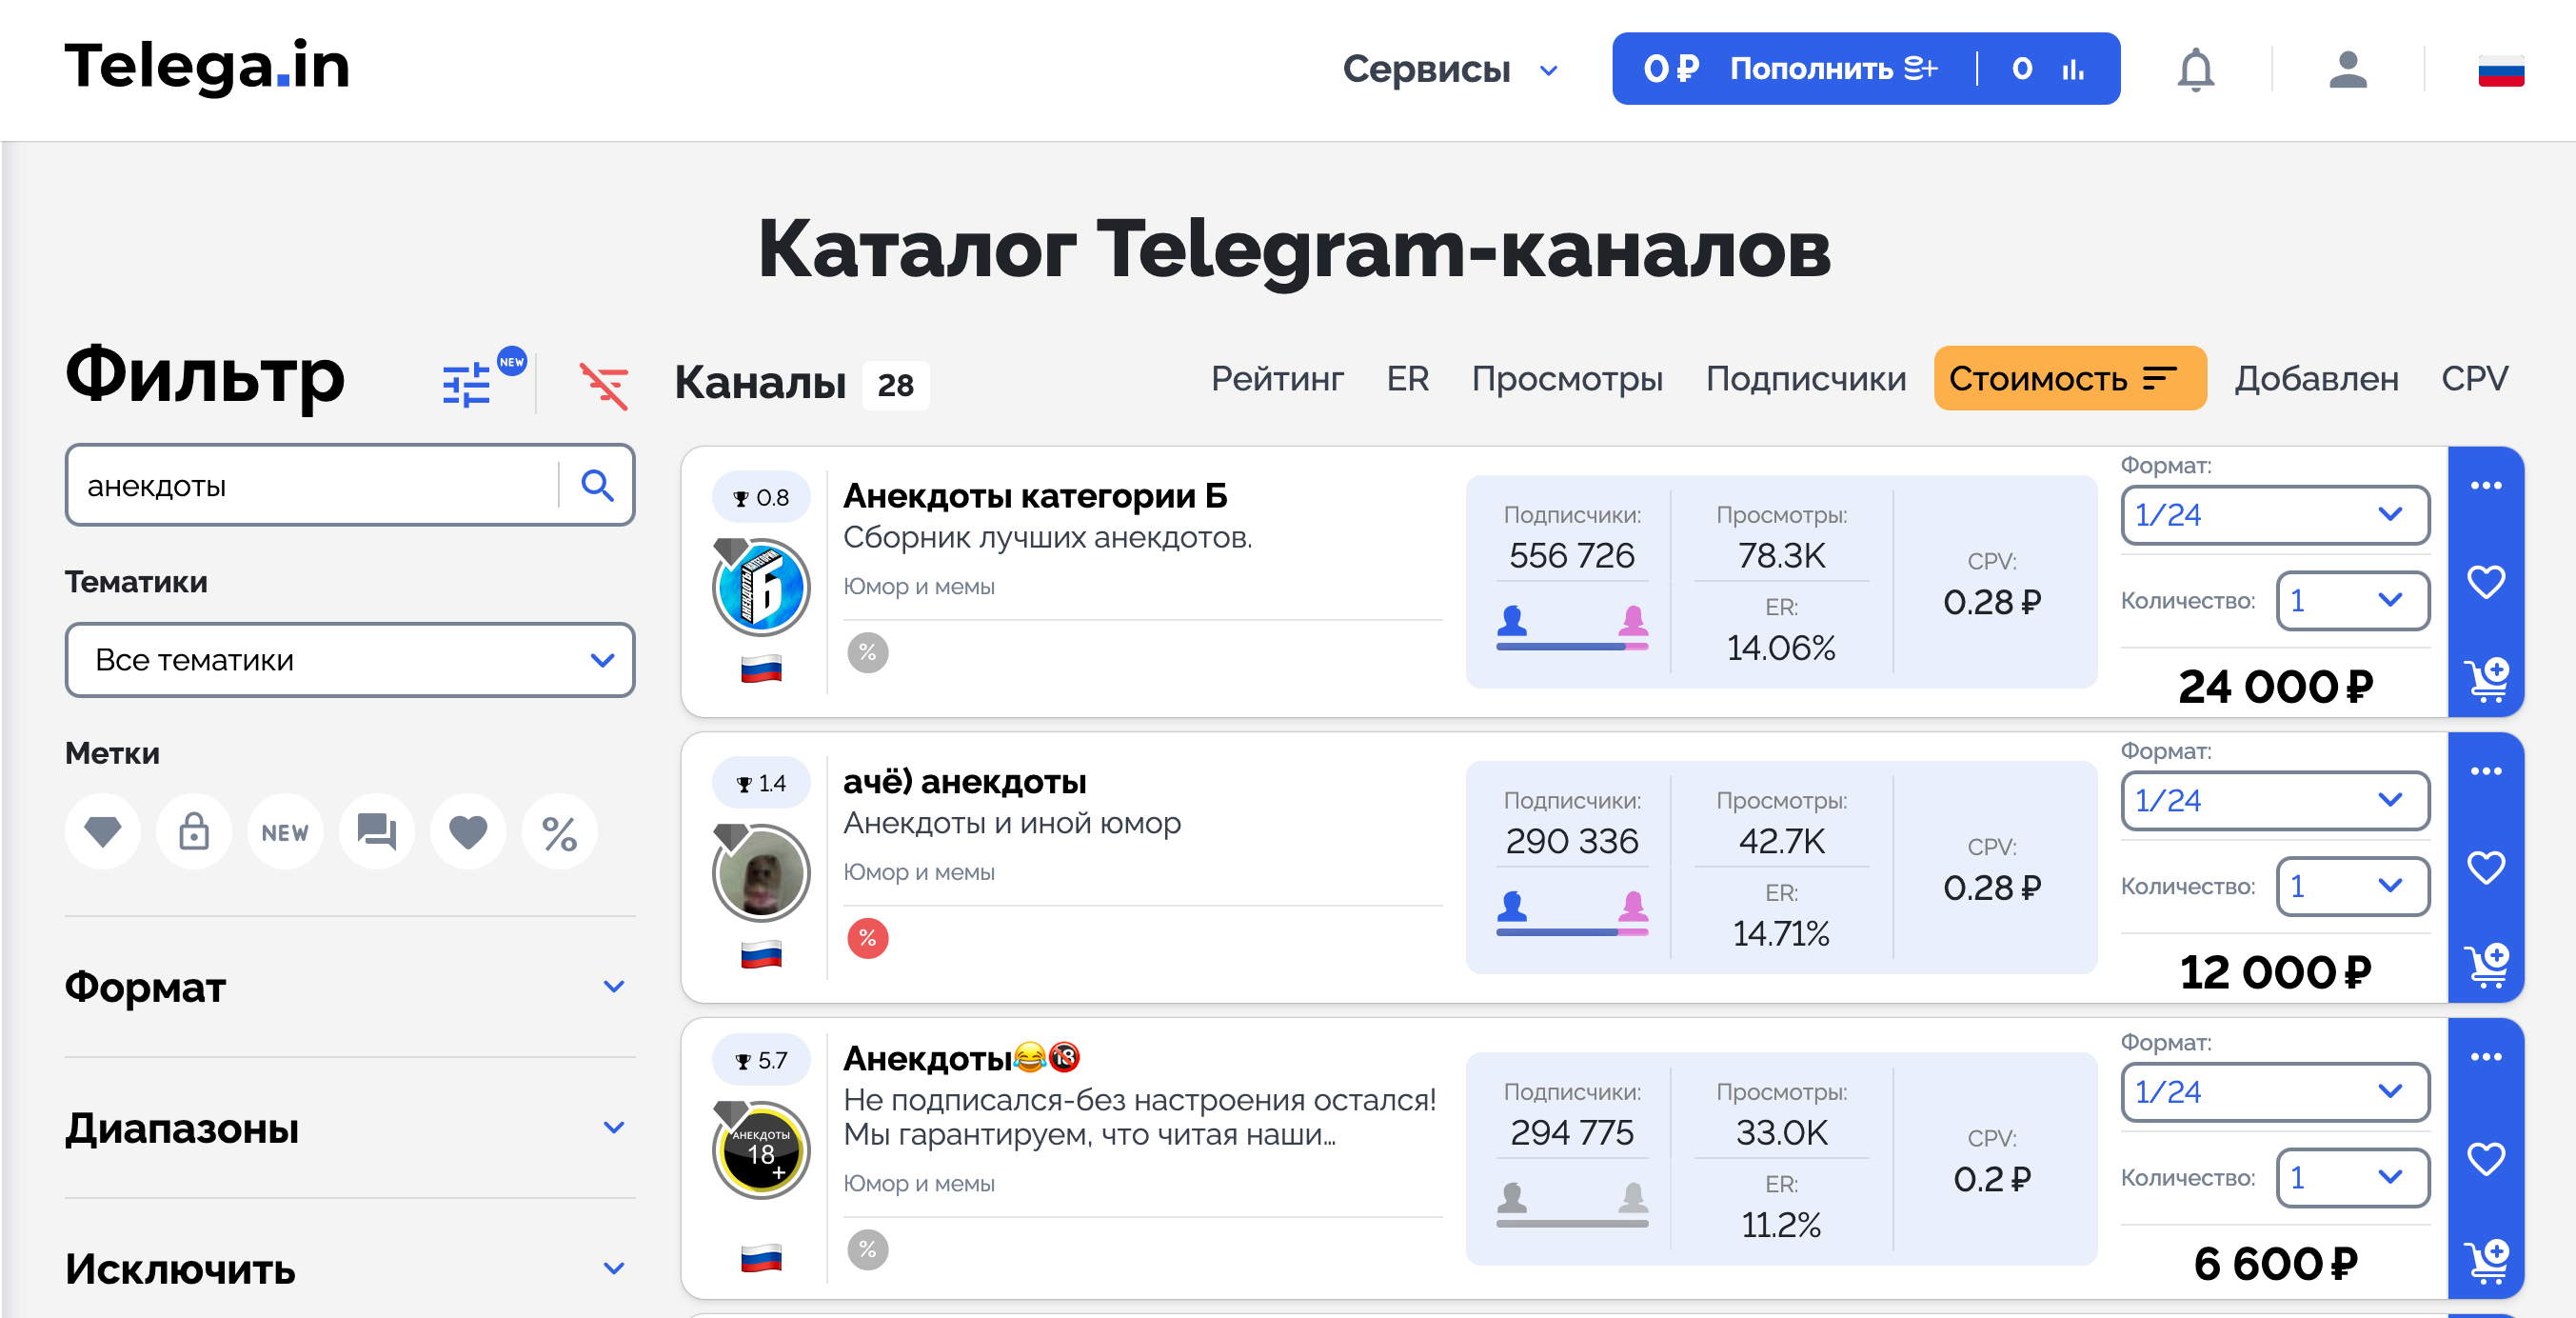 Заработок в телеграмме без вложений с выводом денег на карту на русском языке фото 72